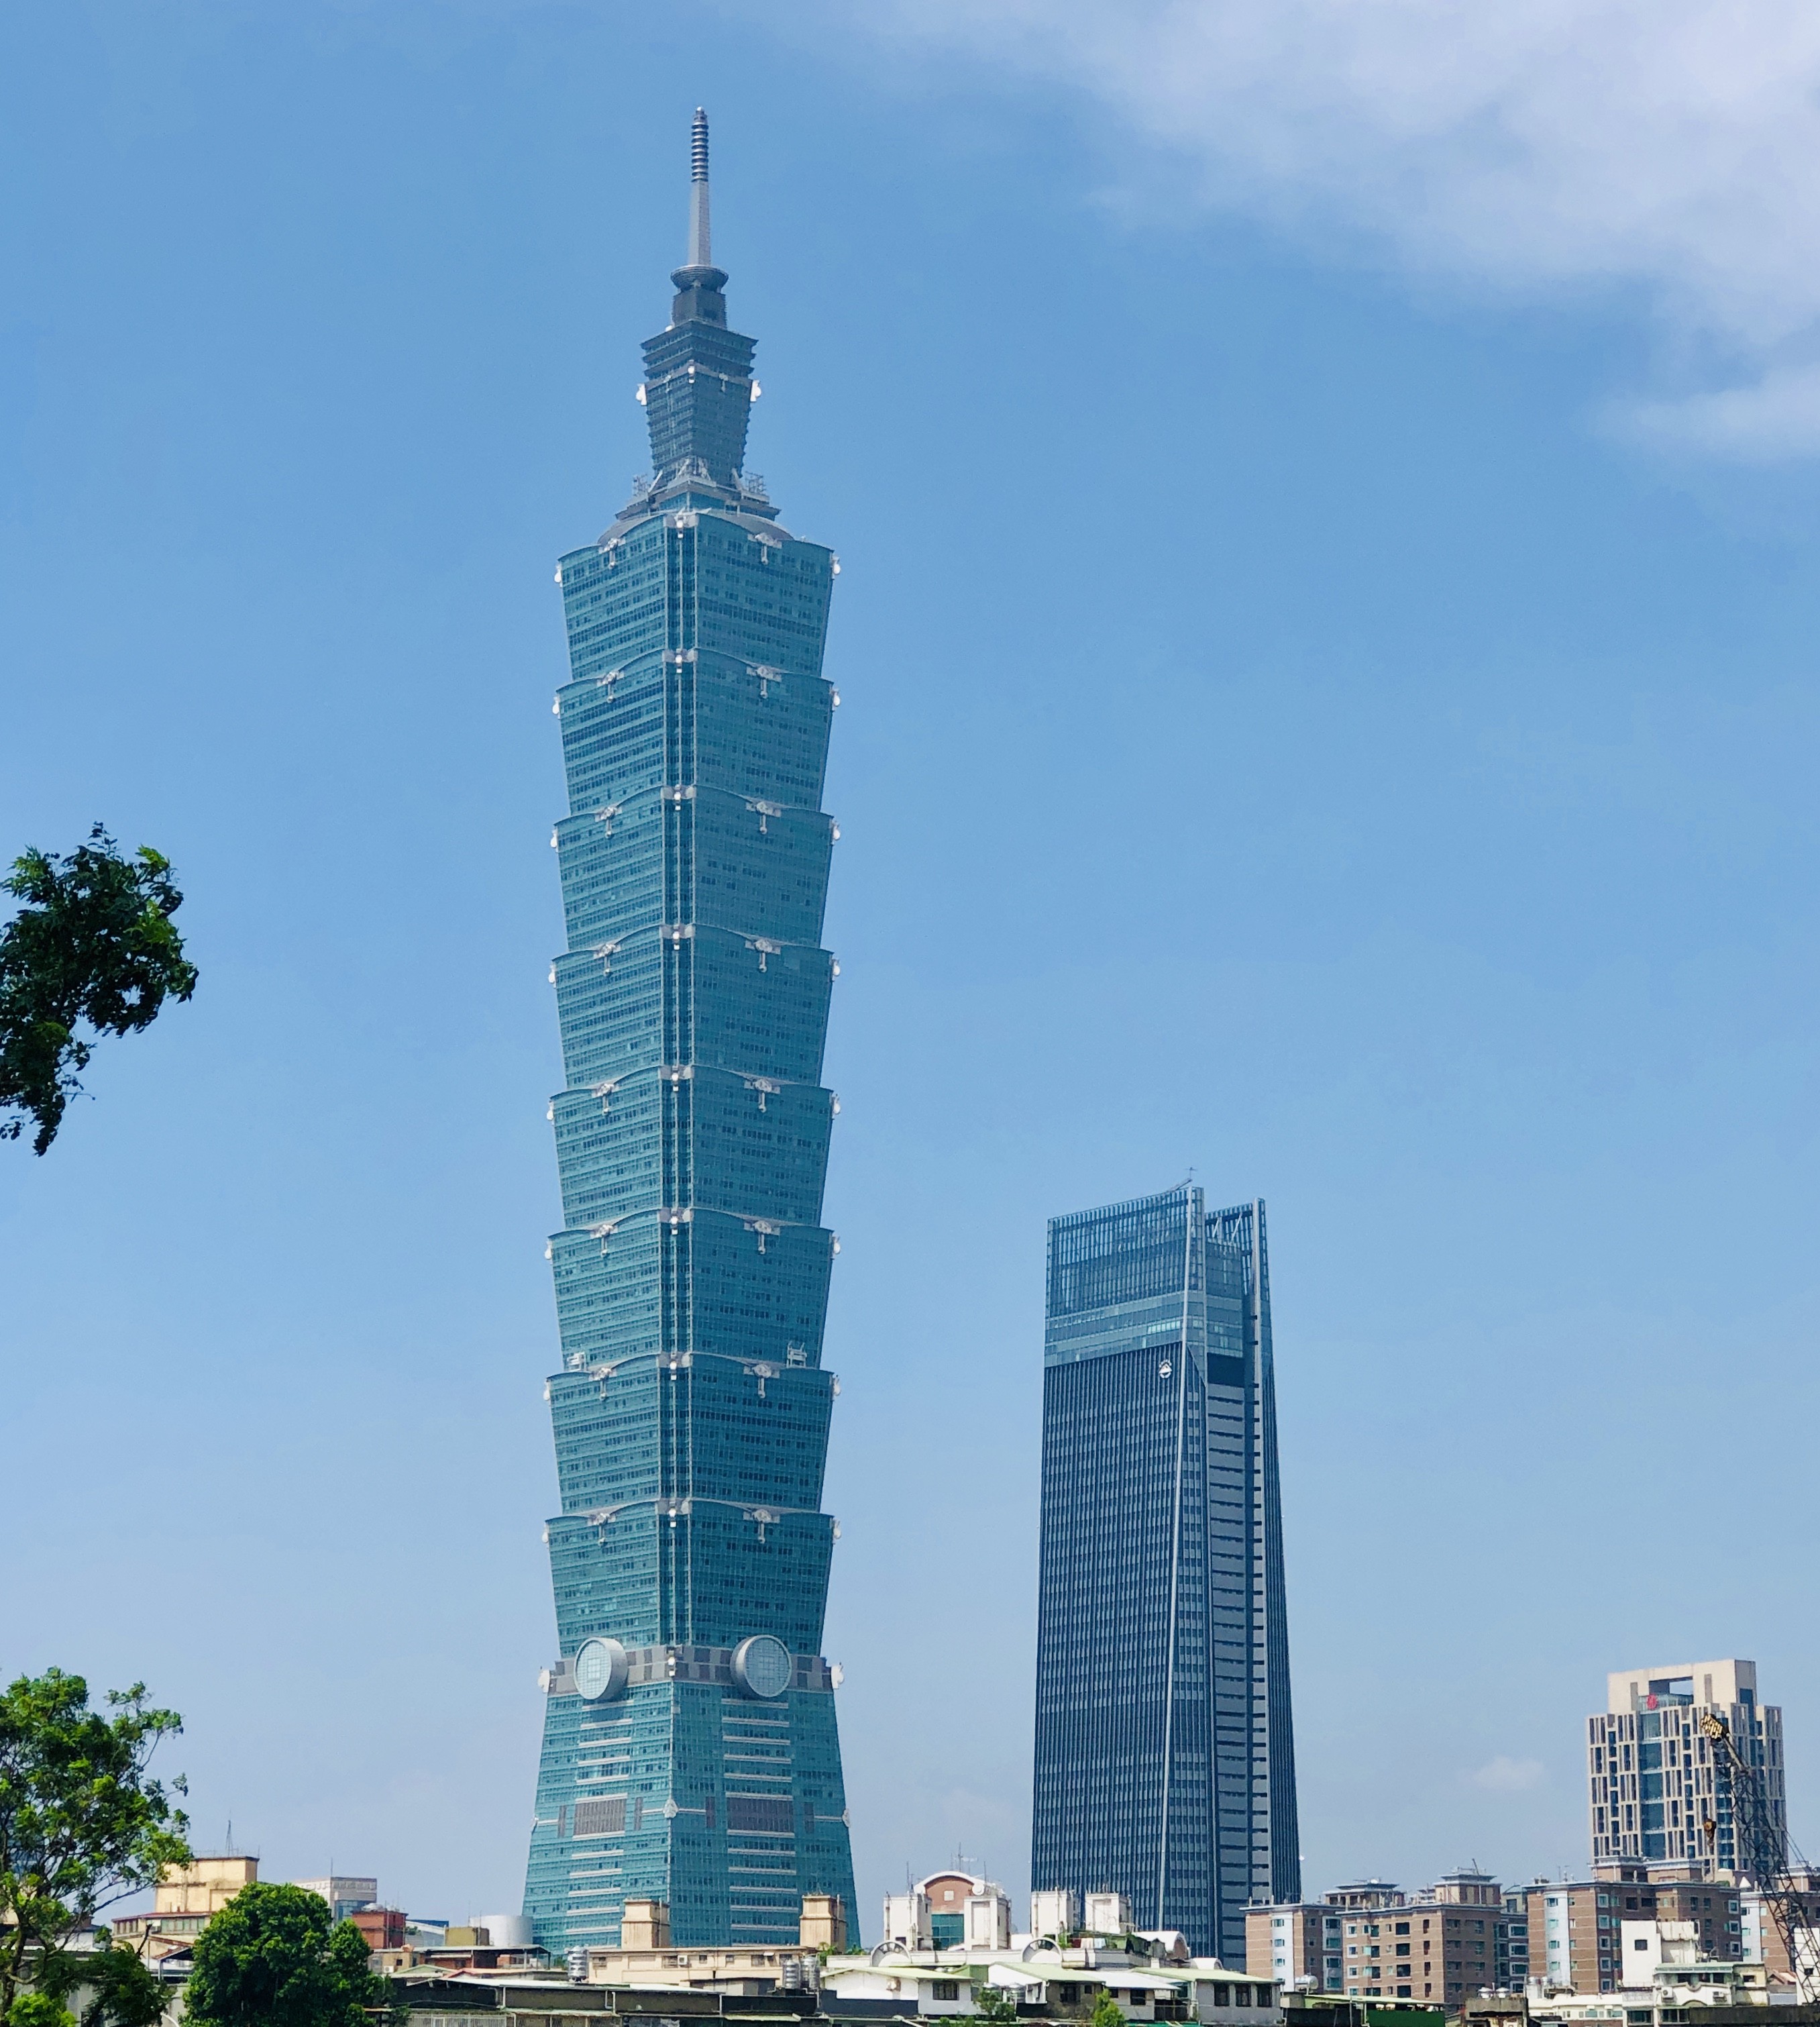 Imagem do Taipei 101: um dos prédios mais altos do mundo (Foto: Wikimedia Commons)